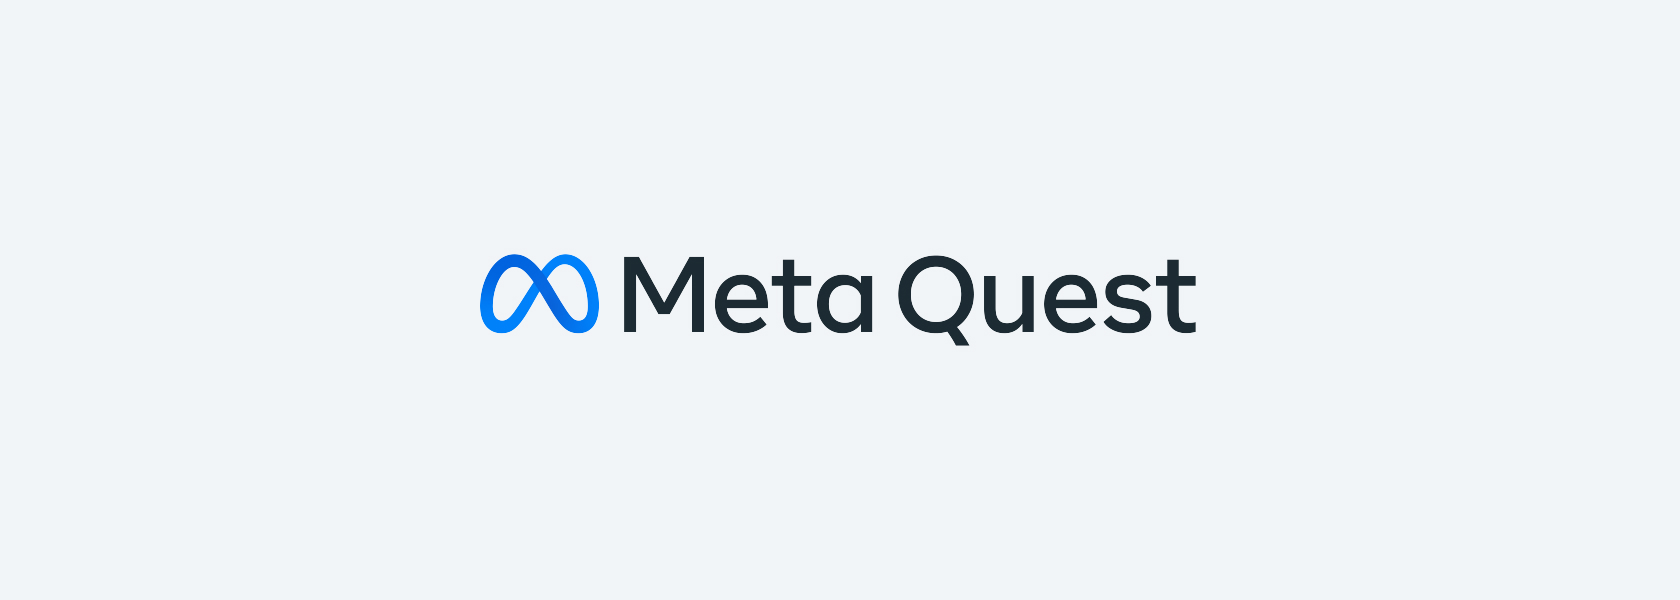 Meta Quest 2 －完全ワイヤレスのオールインワンVRヘッドセット